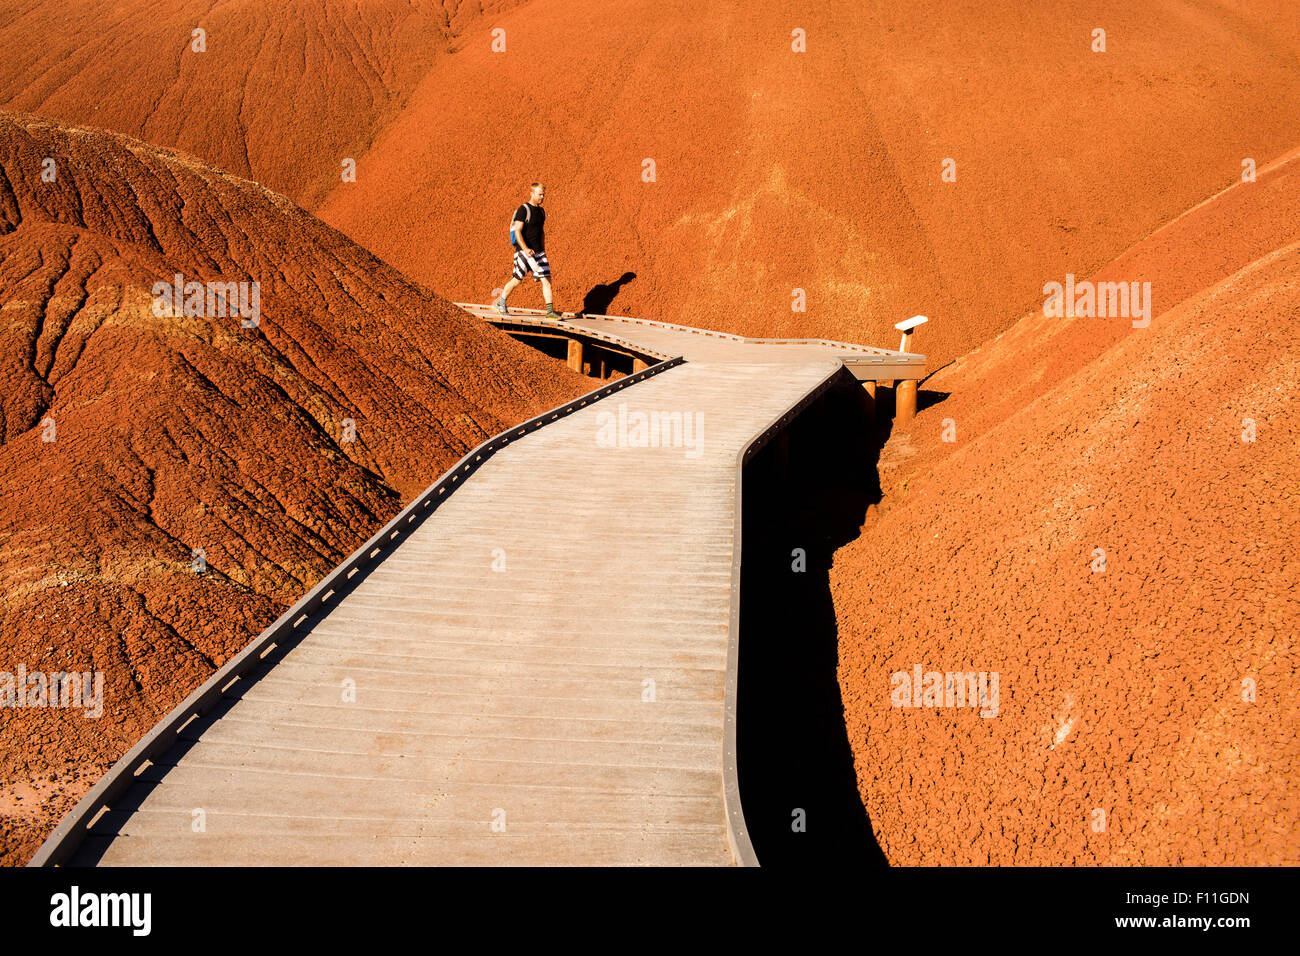 Caucasian hiker on wooden walkway in desert hills Stock Photo